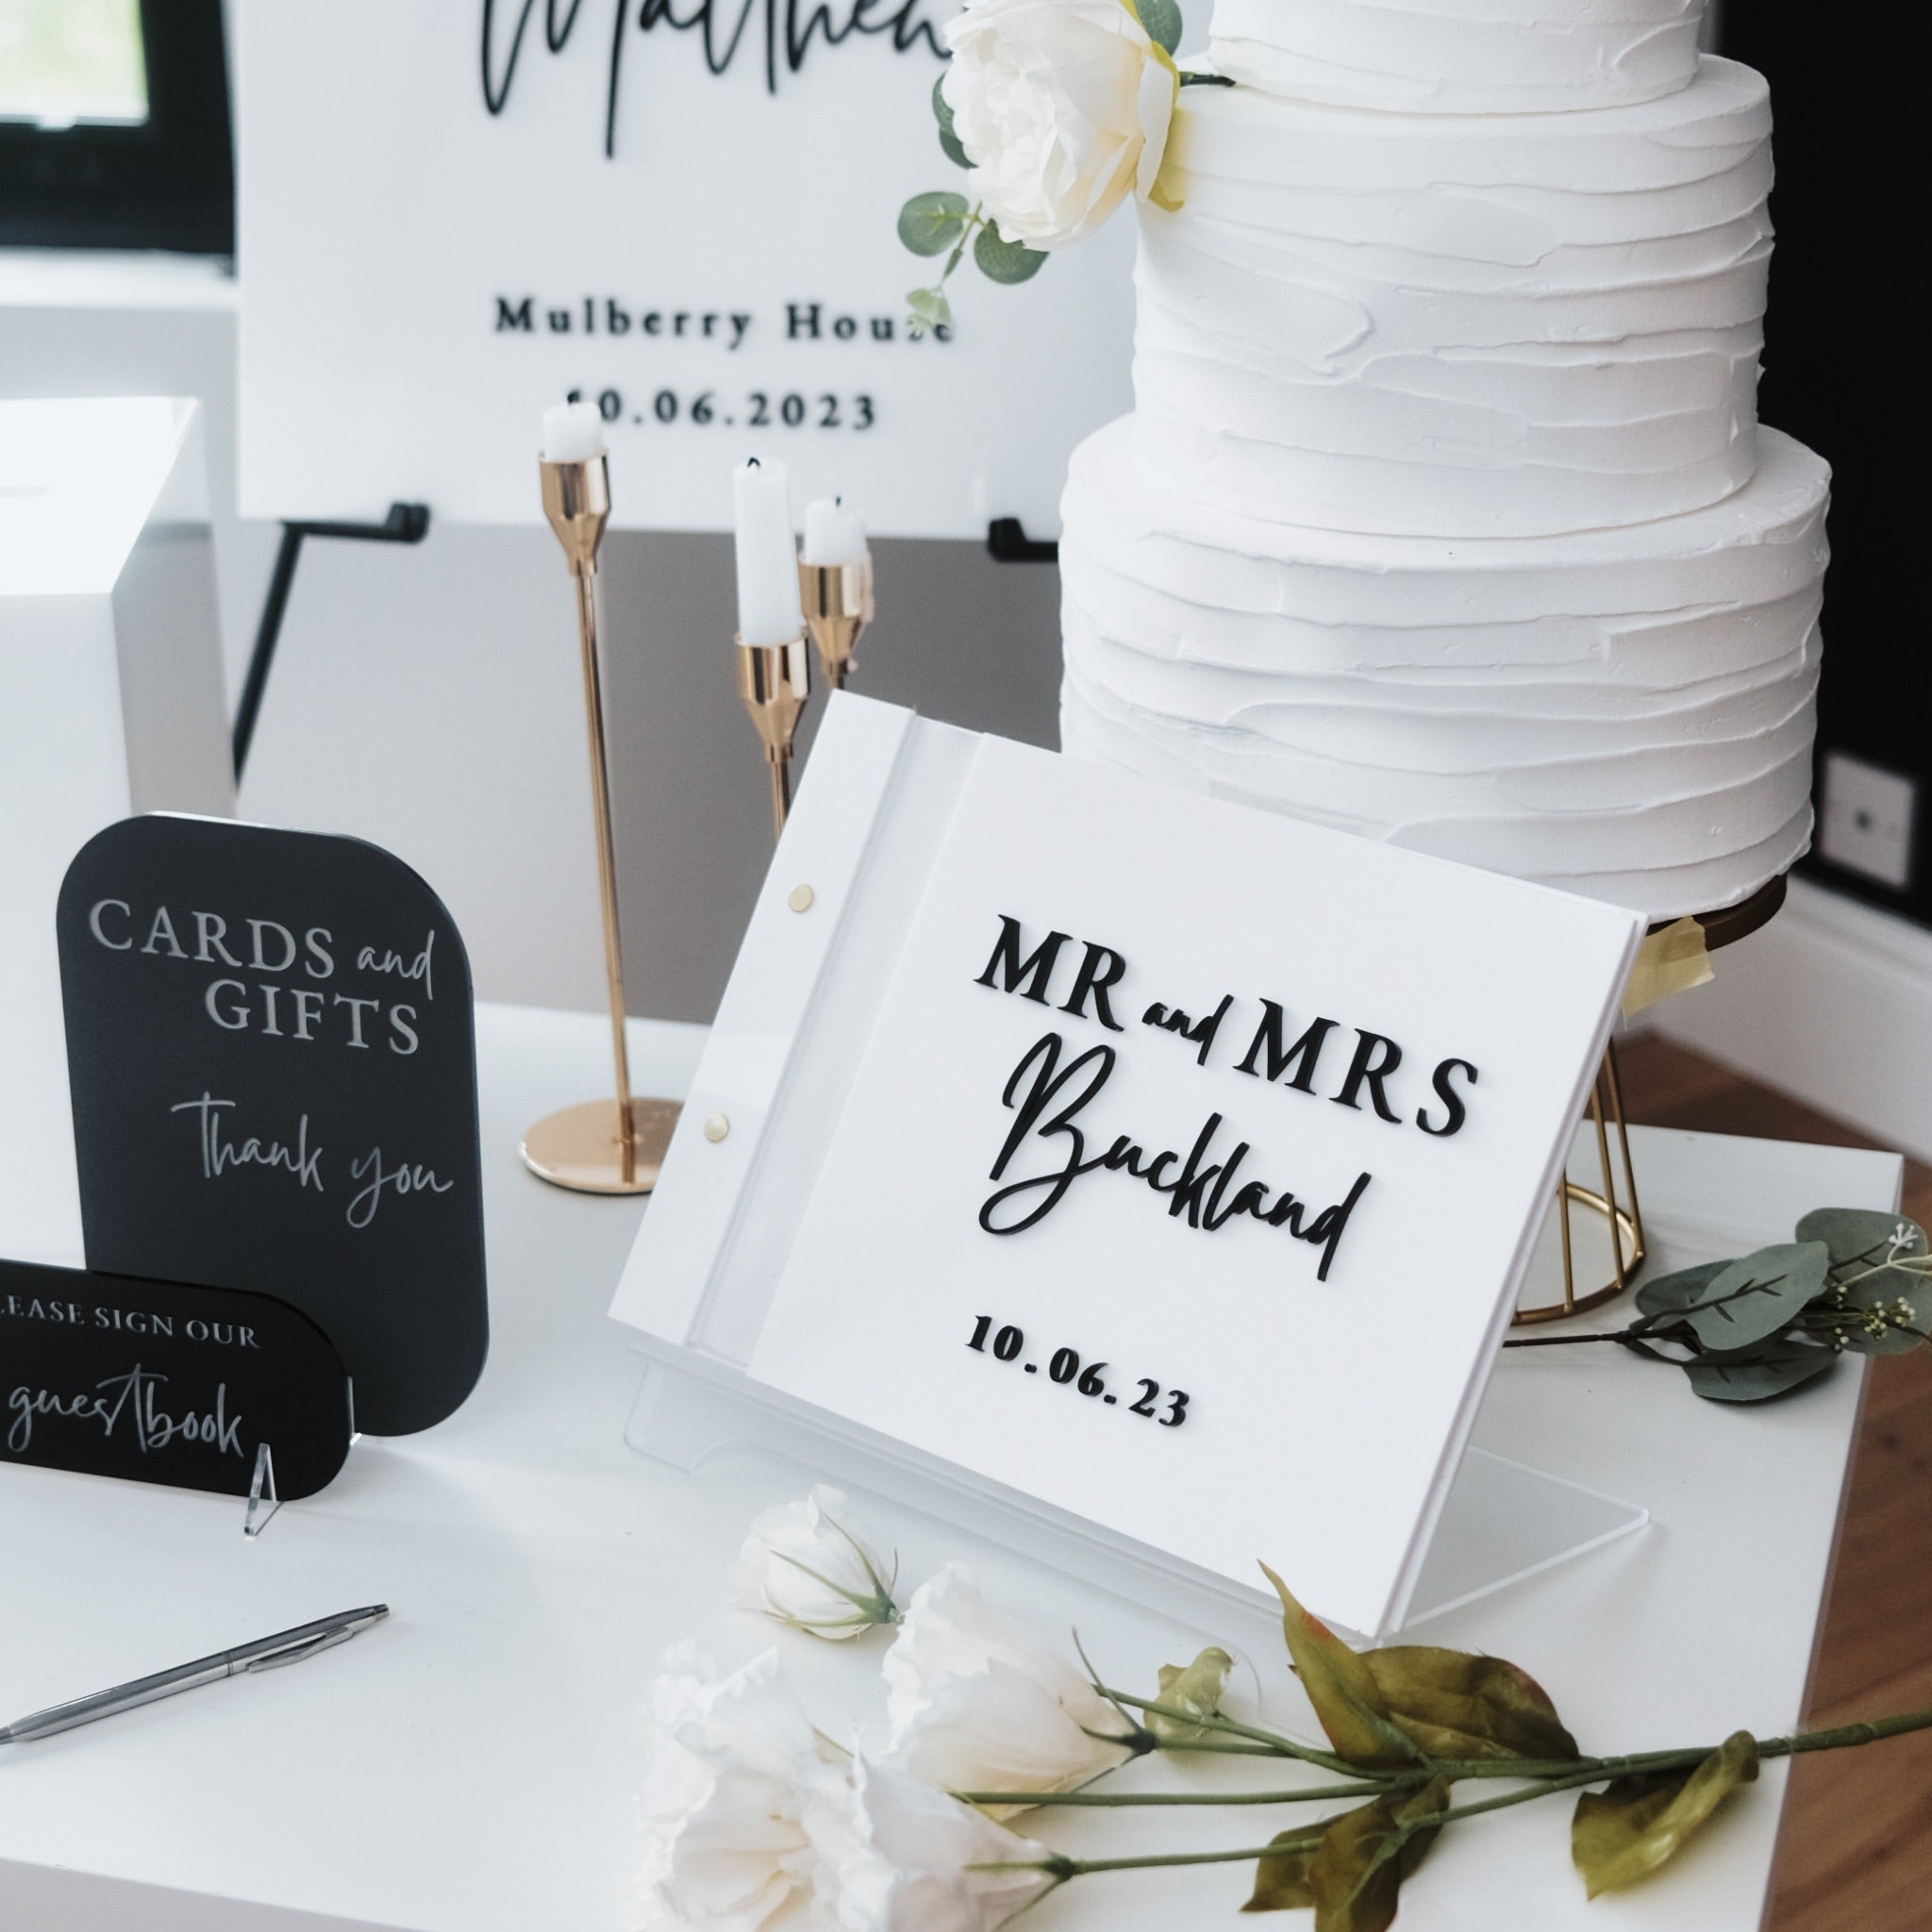 Personalised wedding stationery